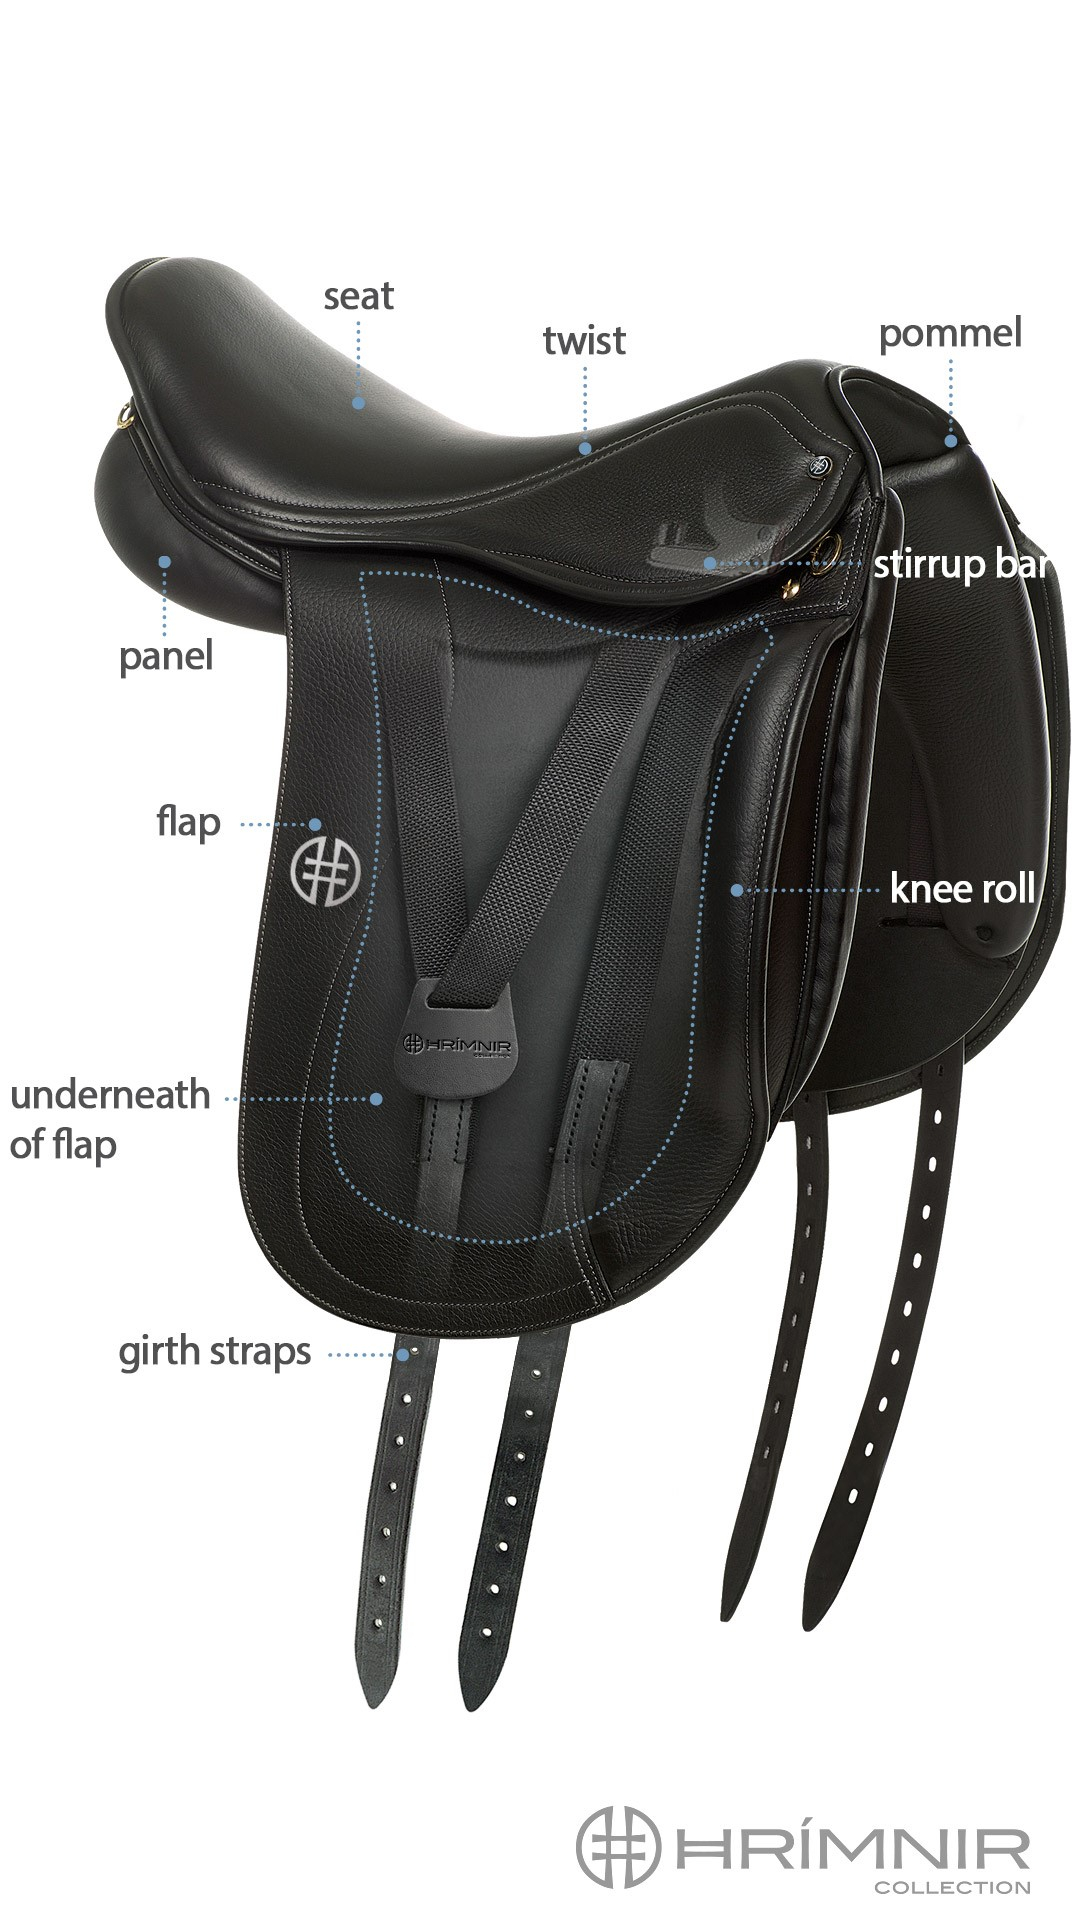 Hrimnir saddle design